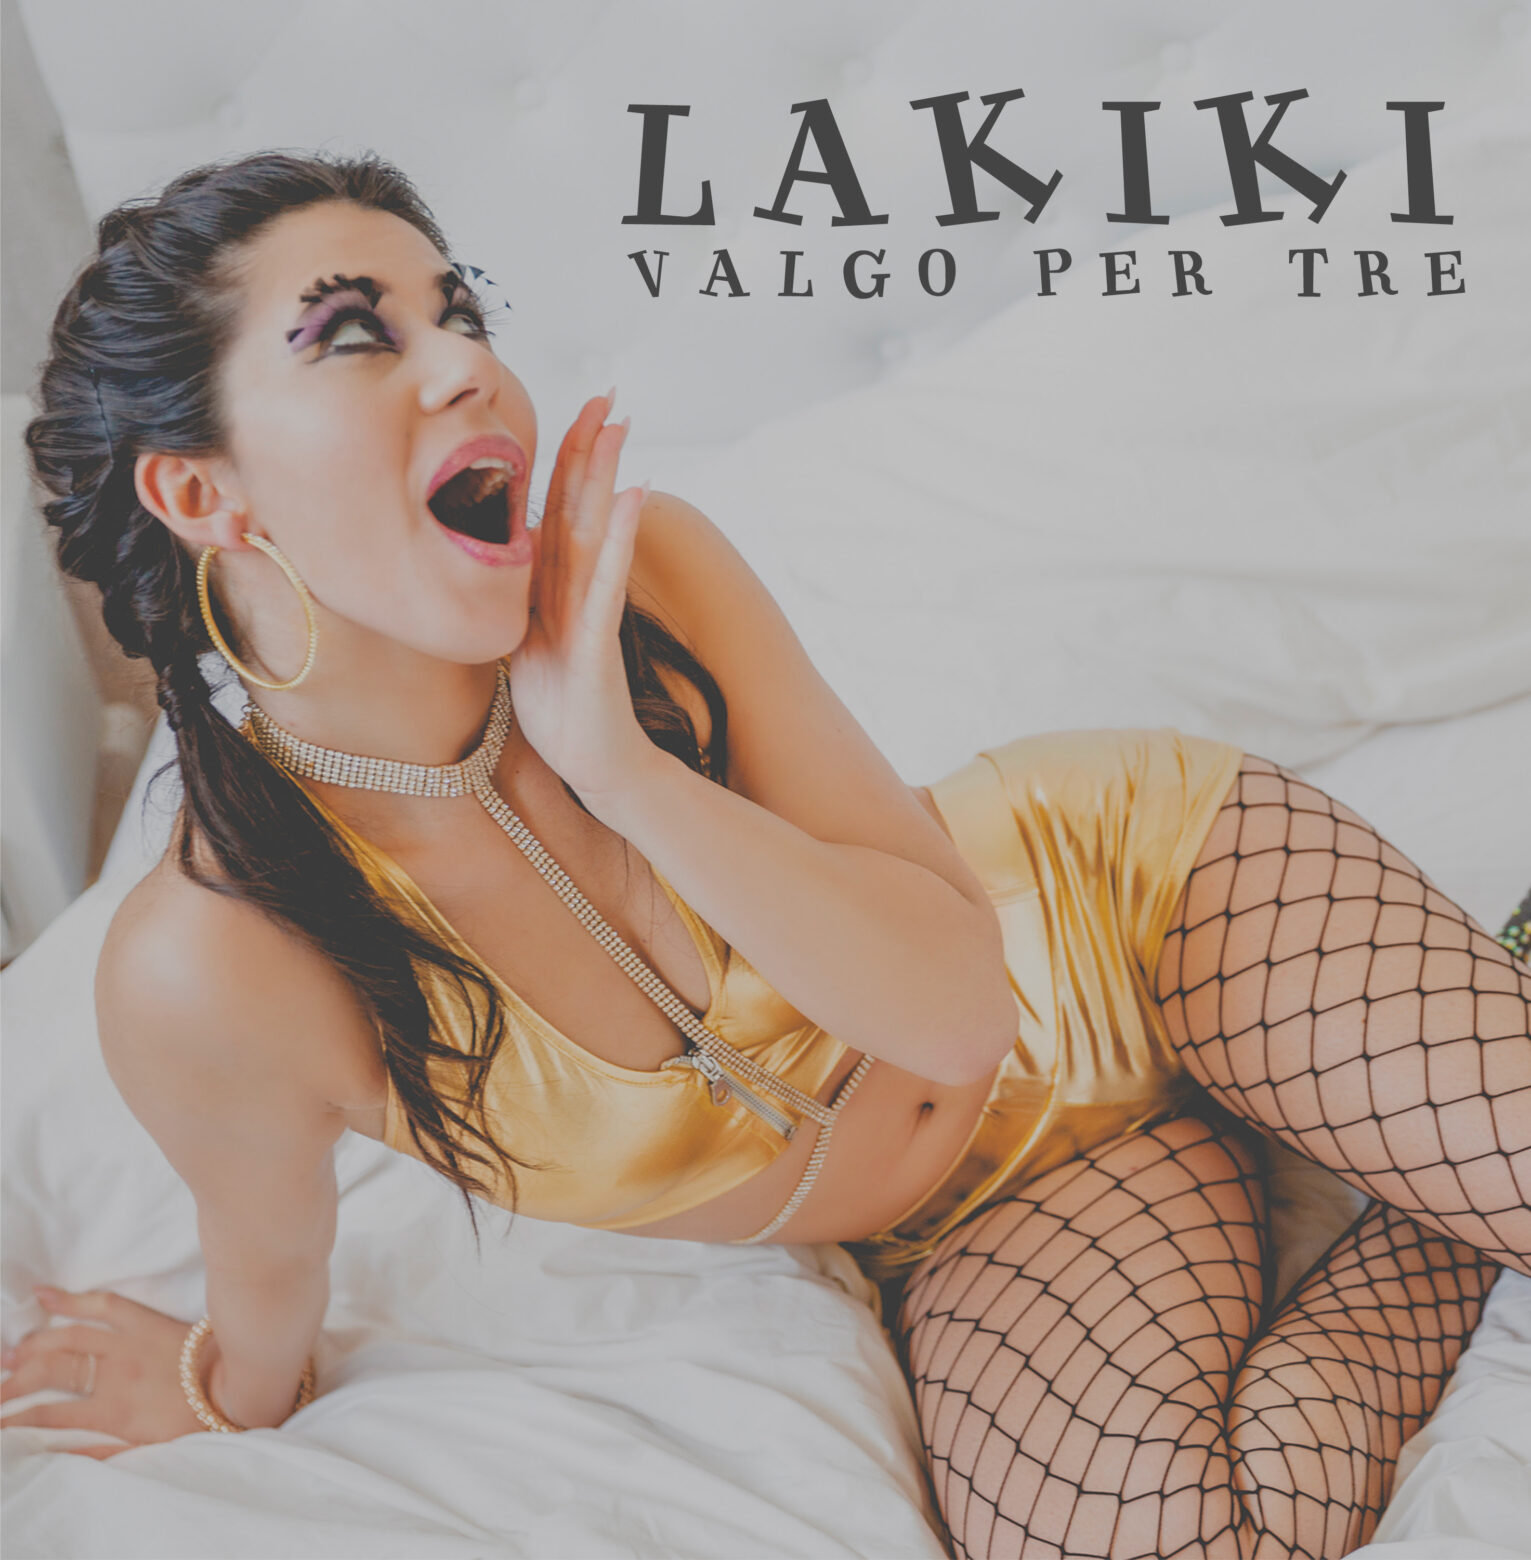 Oggi esce in radio e in digitale il nuovo singolo di Lakiki, “VALGO PER TRE”